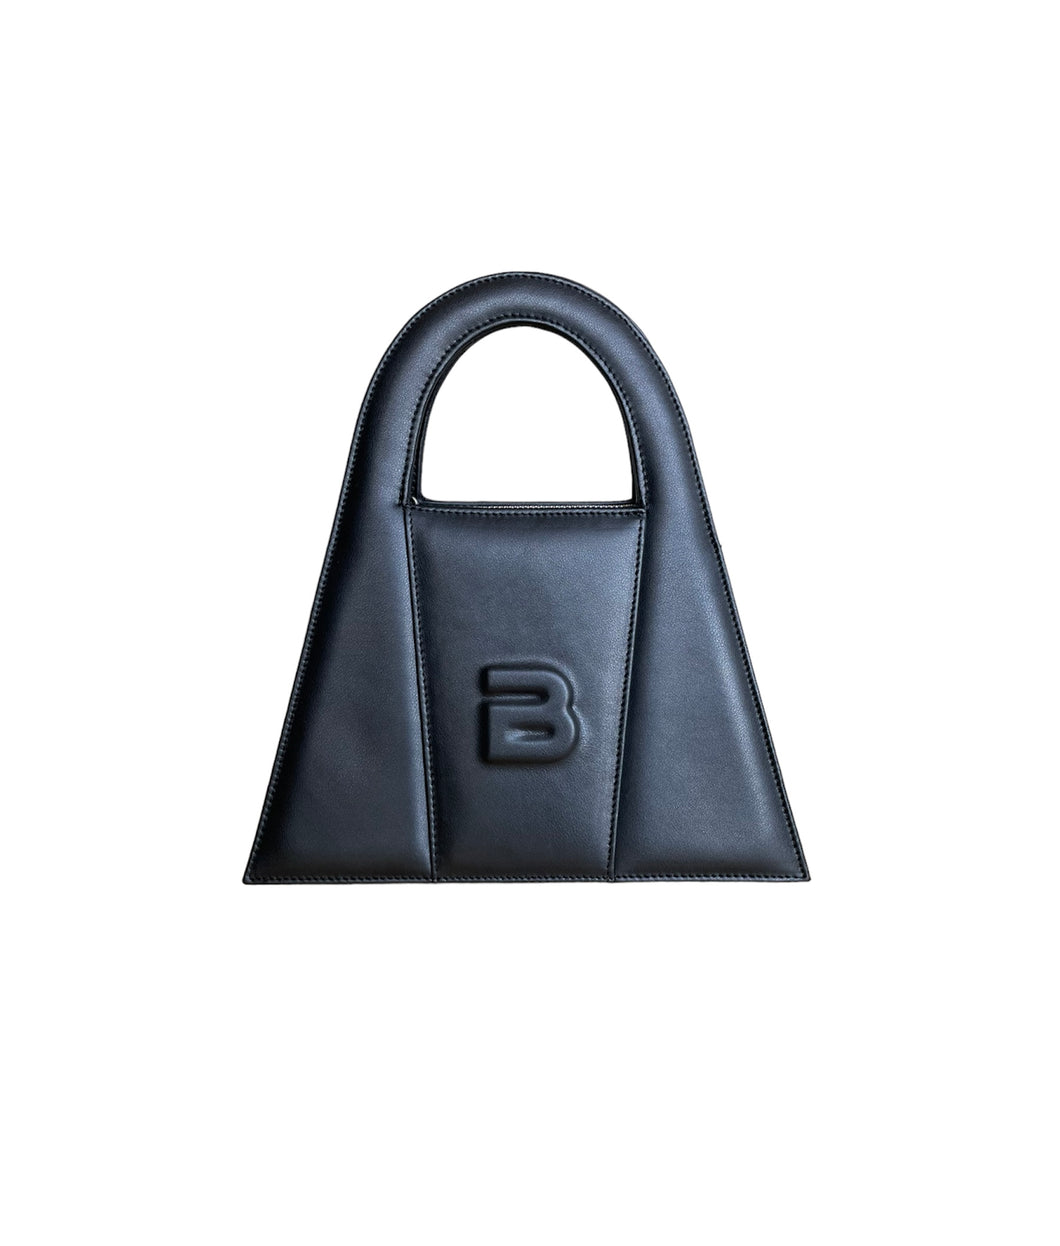 Black Leather Midi Lock Bag